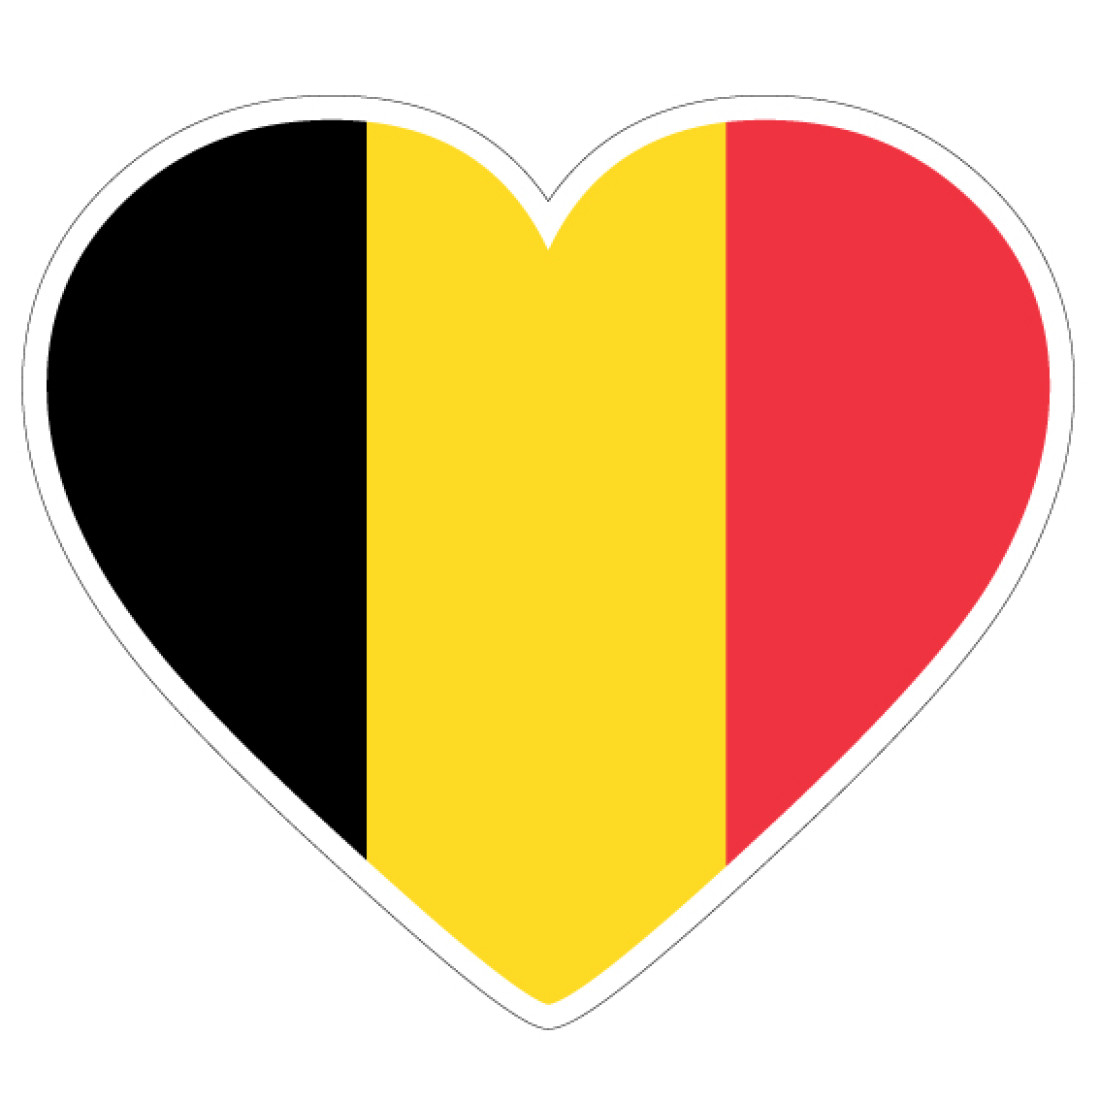 Leve België! Vive la Belgique!